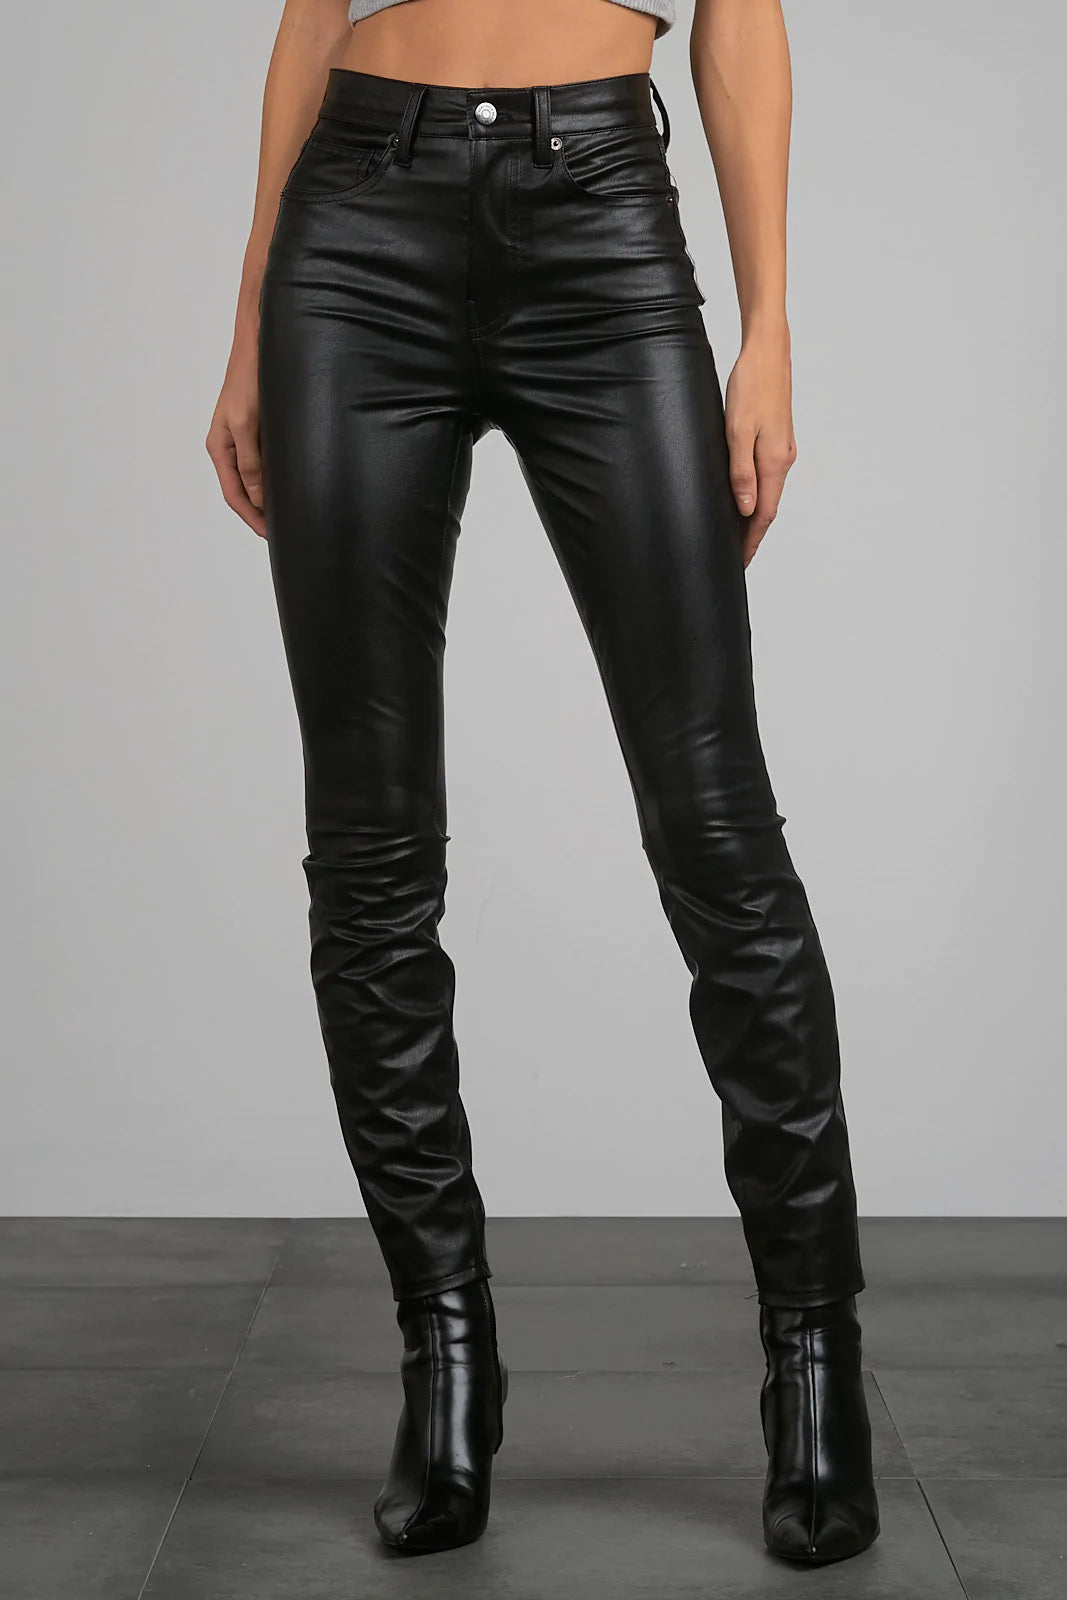 Black faux leather pants